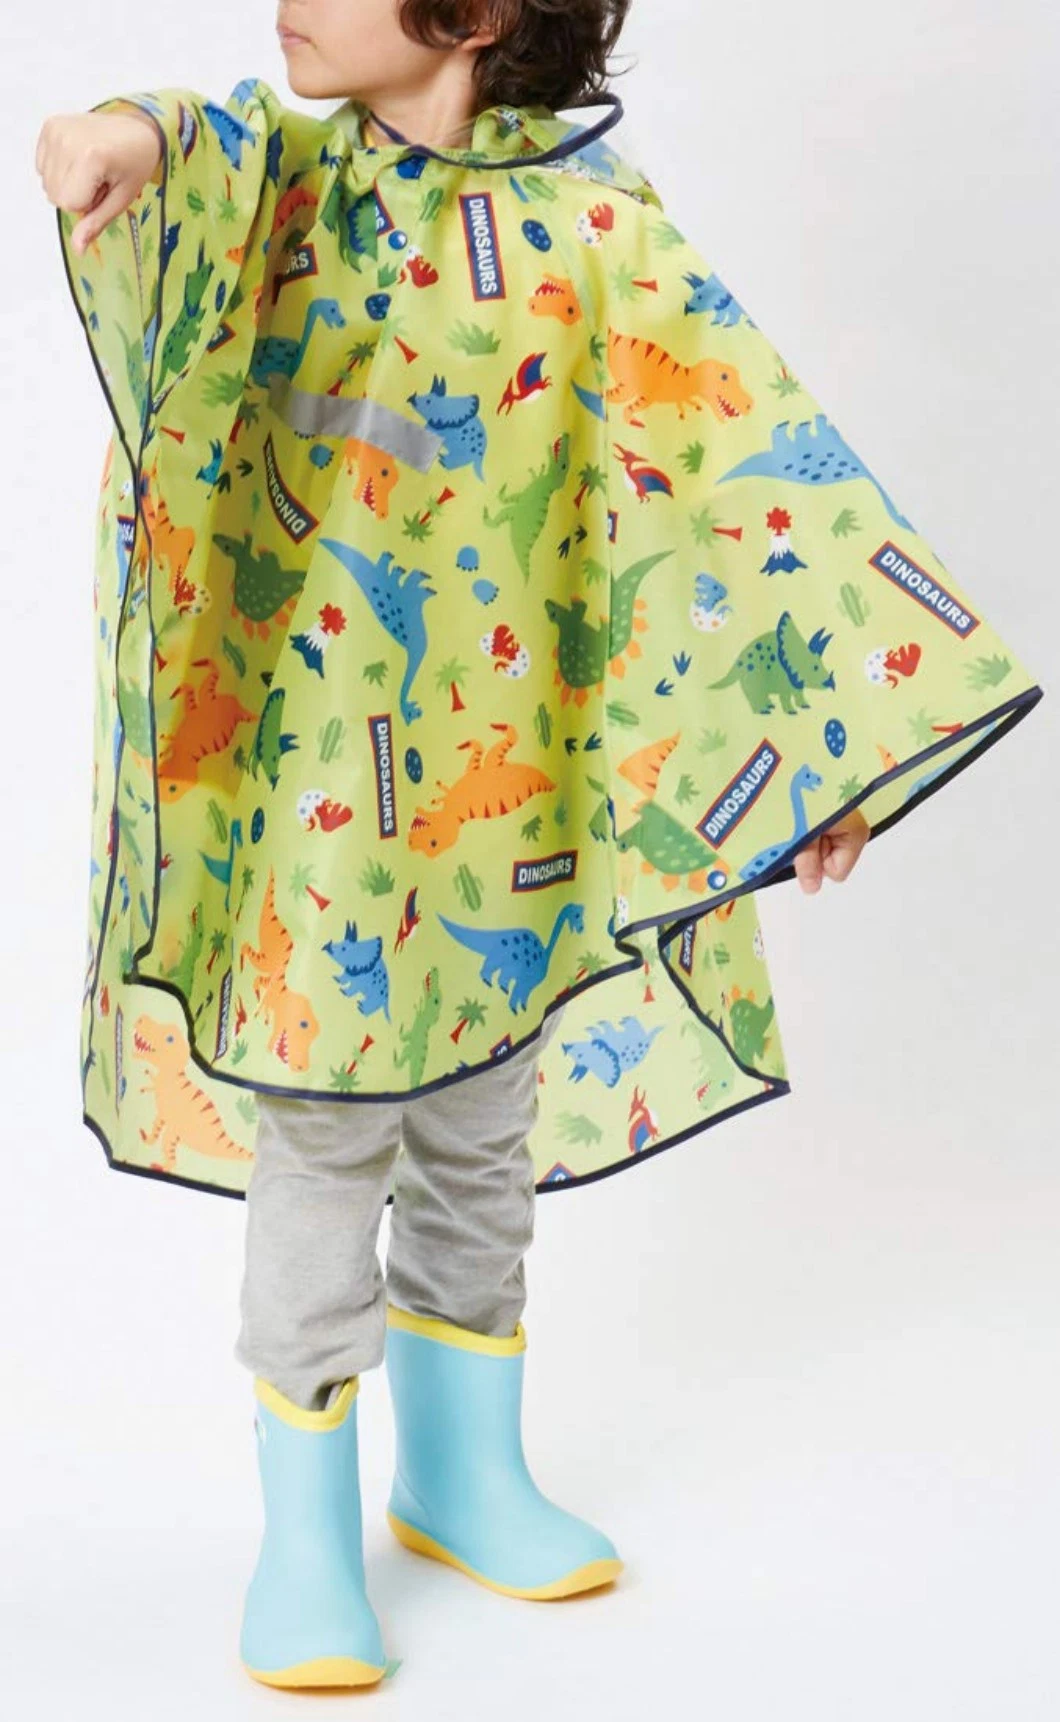 Fashion Outdoor Cartoon Animal Hooded Windproof Rain Coat Rainwear Waterproof Rain Poncho